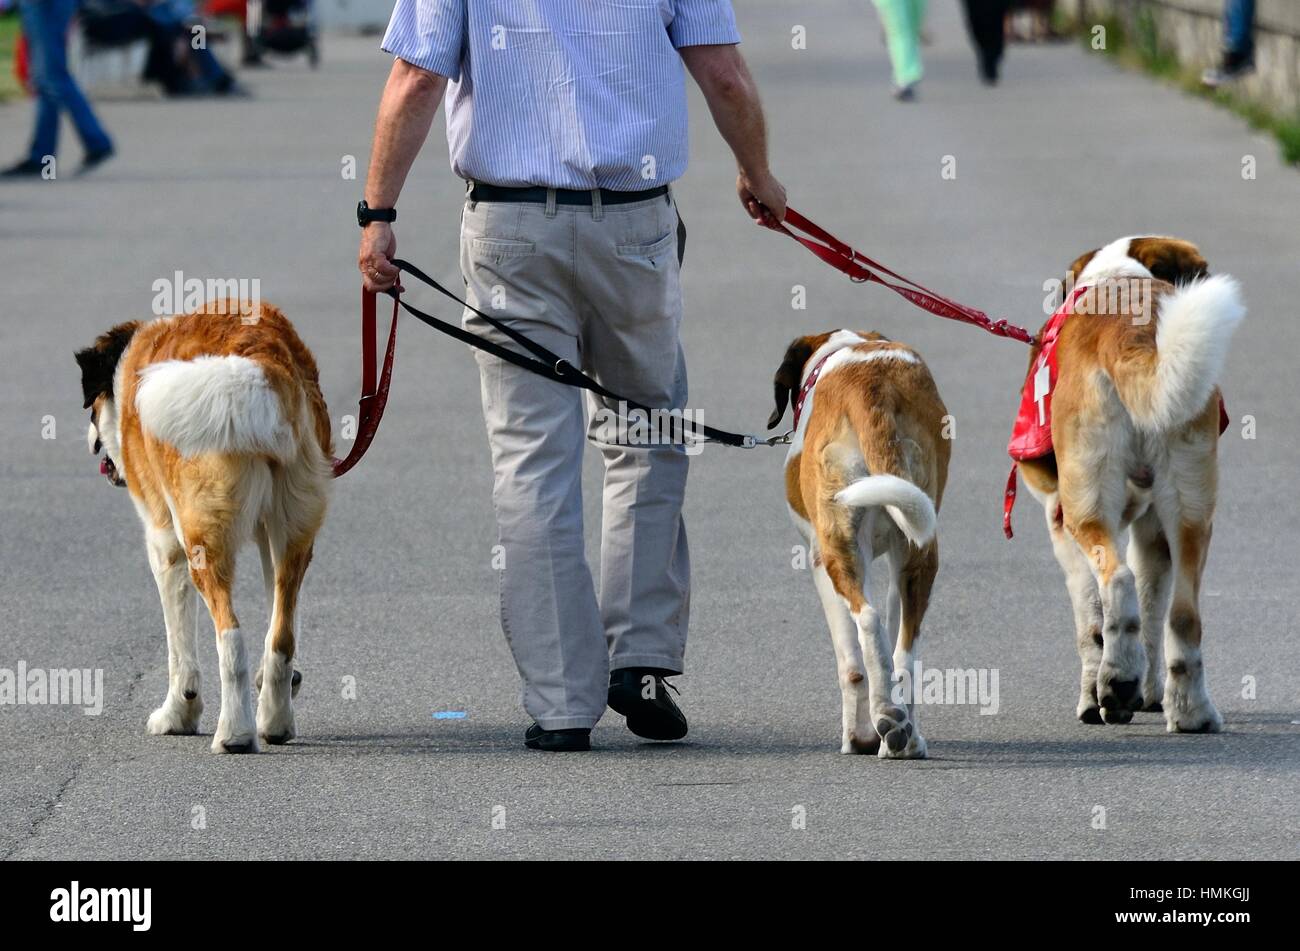 Drei Bernhardiner Hunde bei einem Spaziergang, Genf, Schweiz  Stockfotografie - Alamy